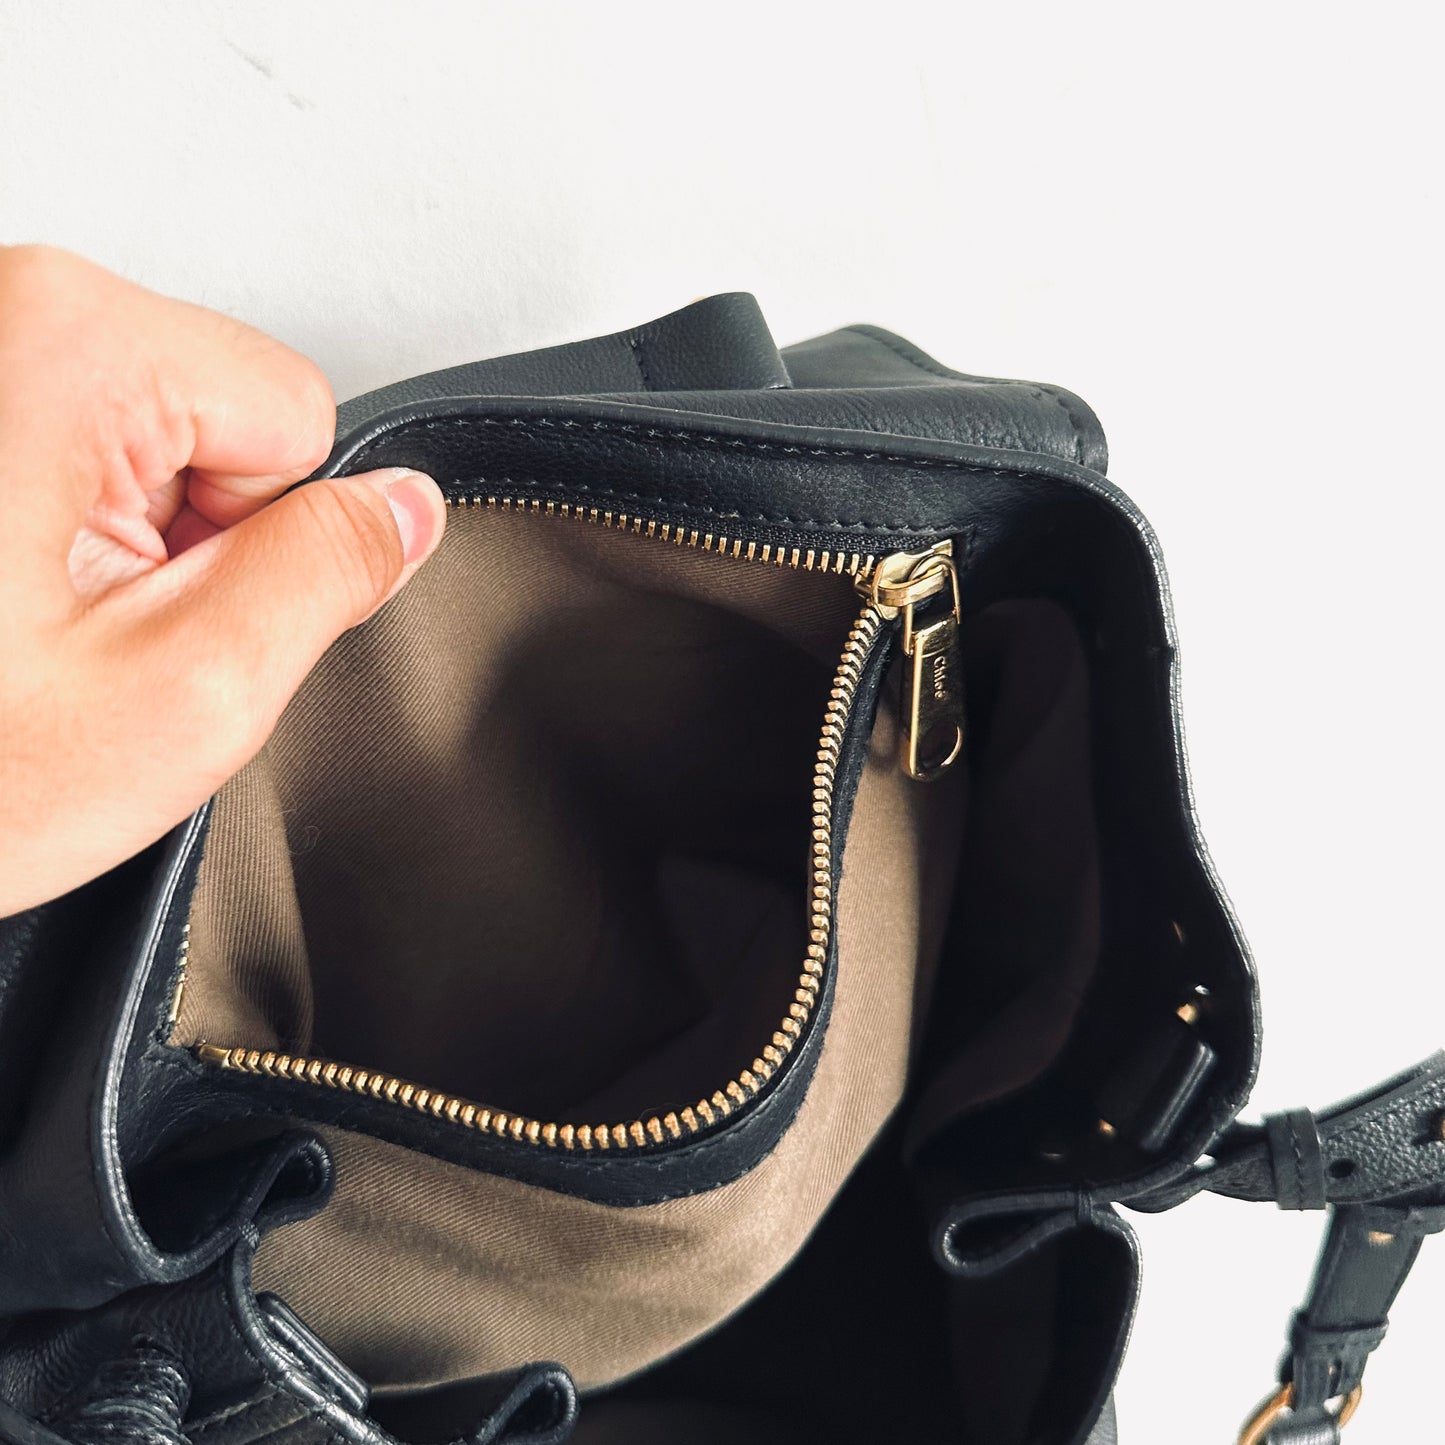 Chloe Elsie Black GHW Classic Leather Monogram Logo Turnlock Flap Top Handle Shoulder Sling Bag